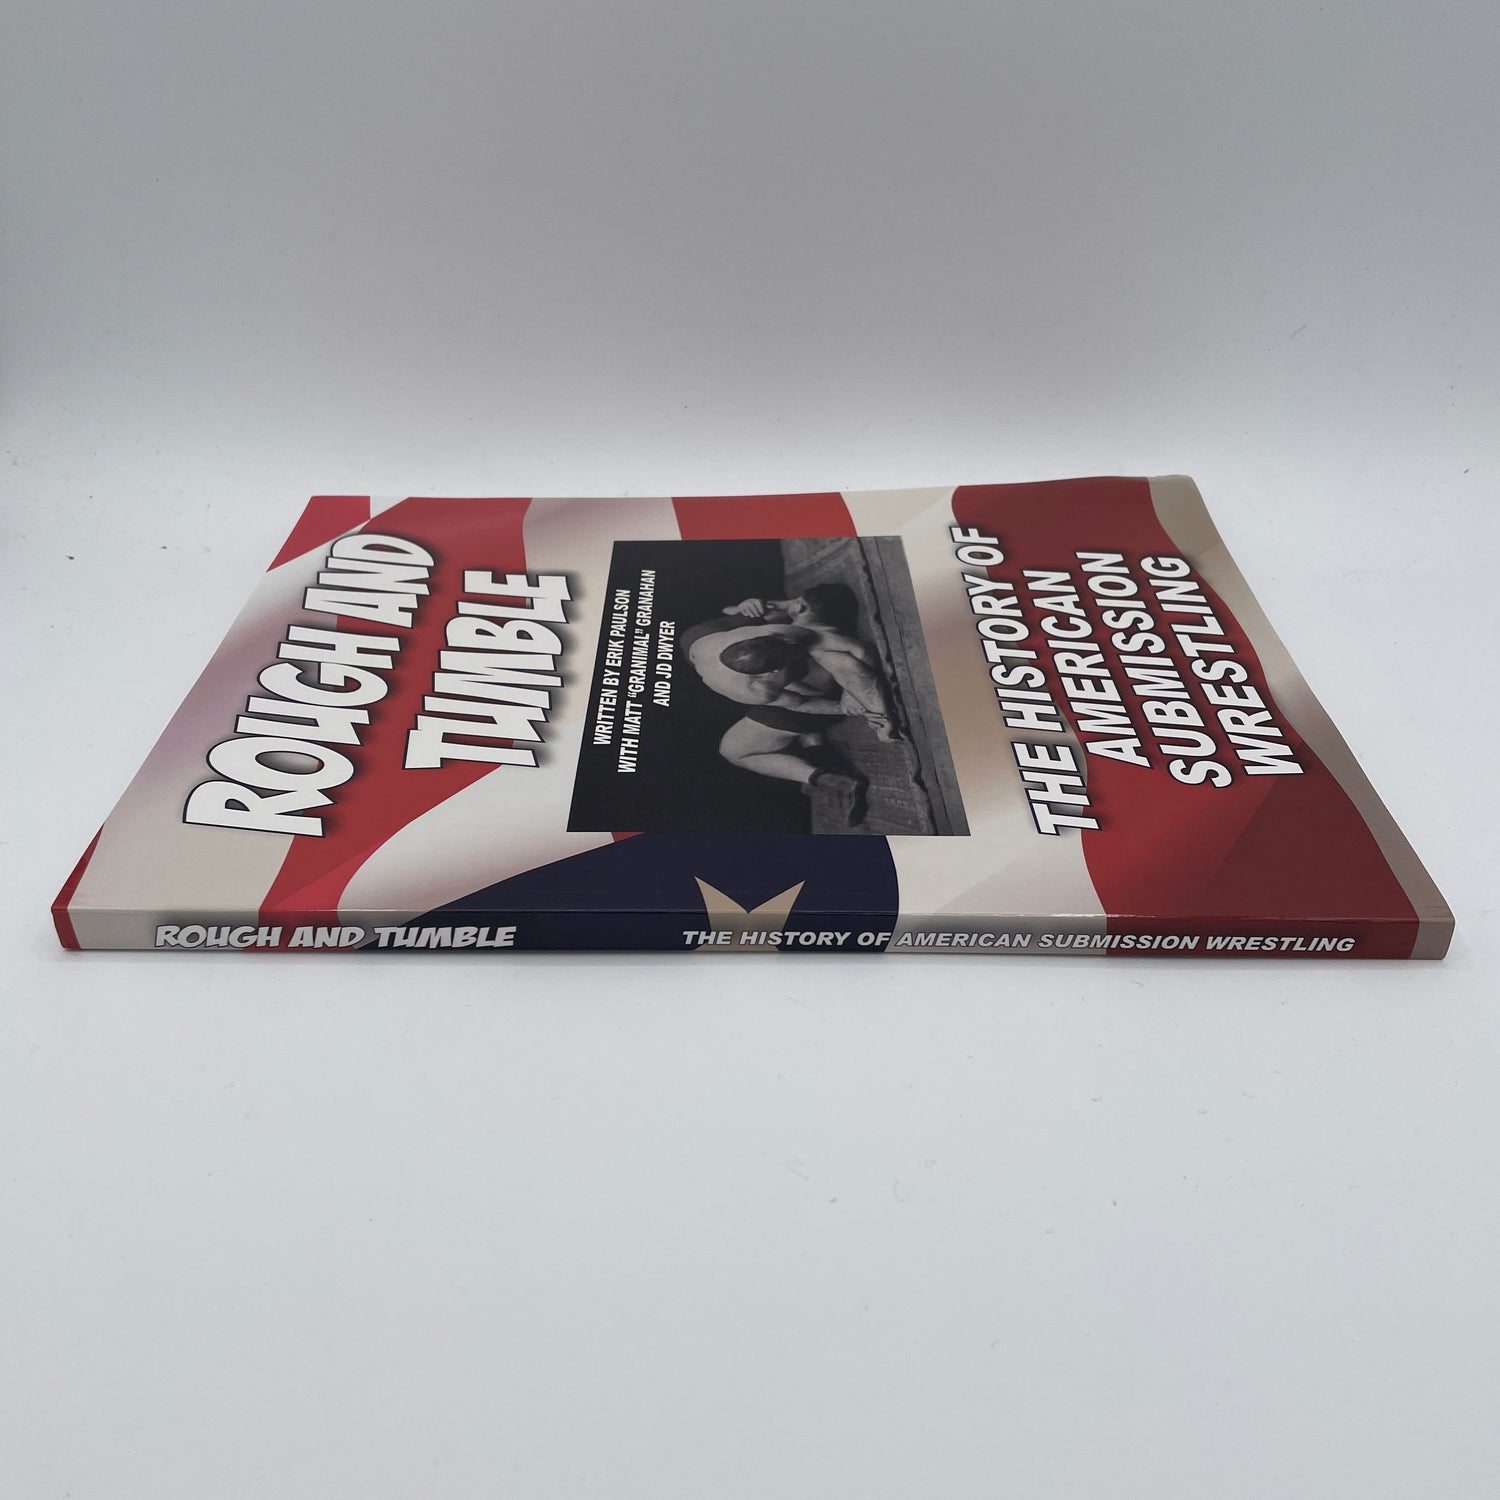 Rough and Tumble: libro de la historia de la lucha de sumisión estadounidense de Erik Paulson 